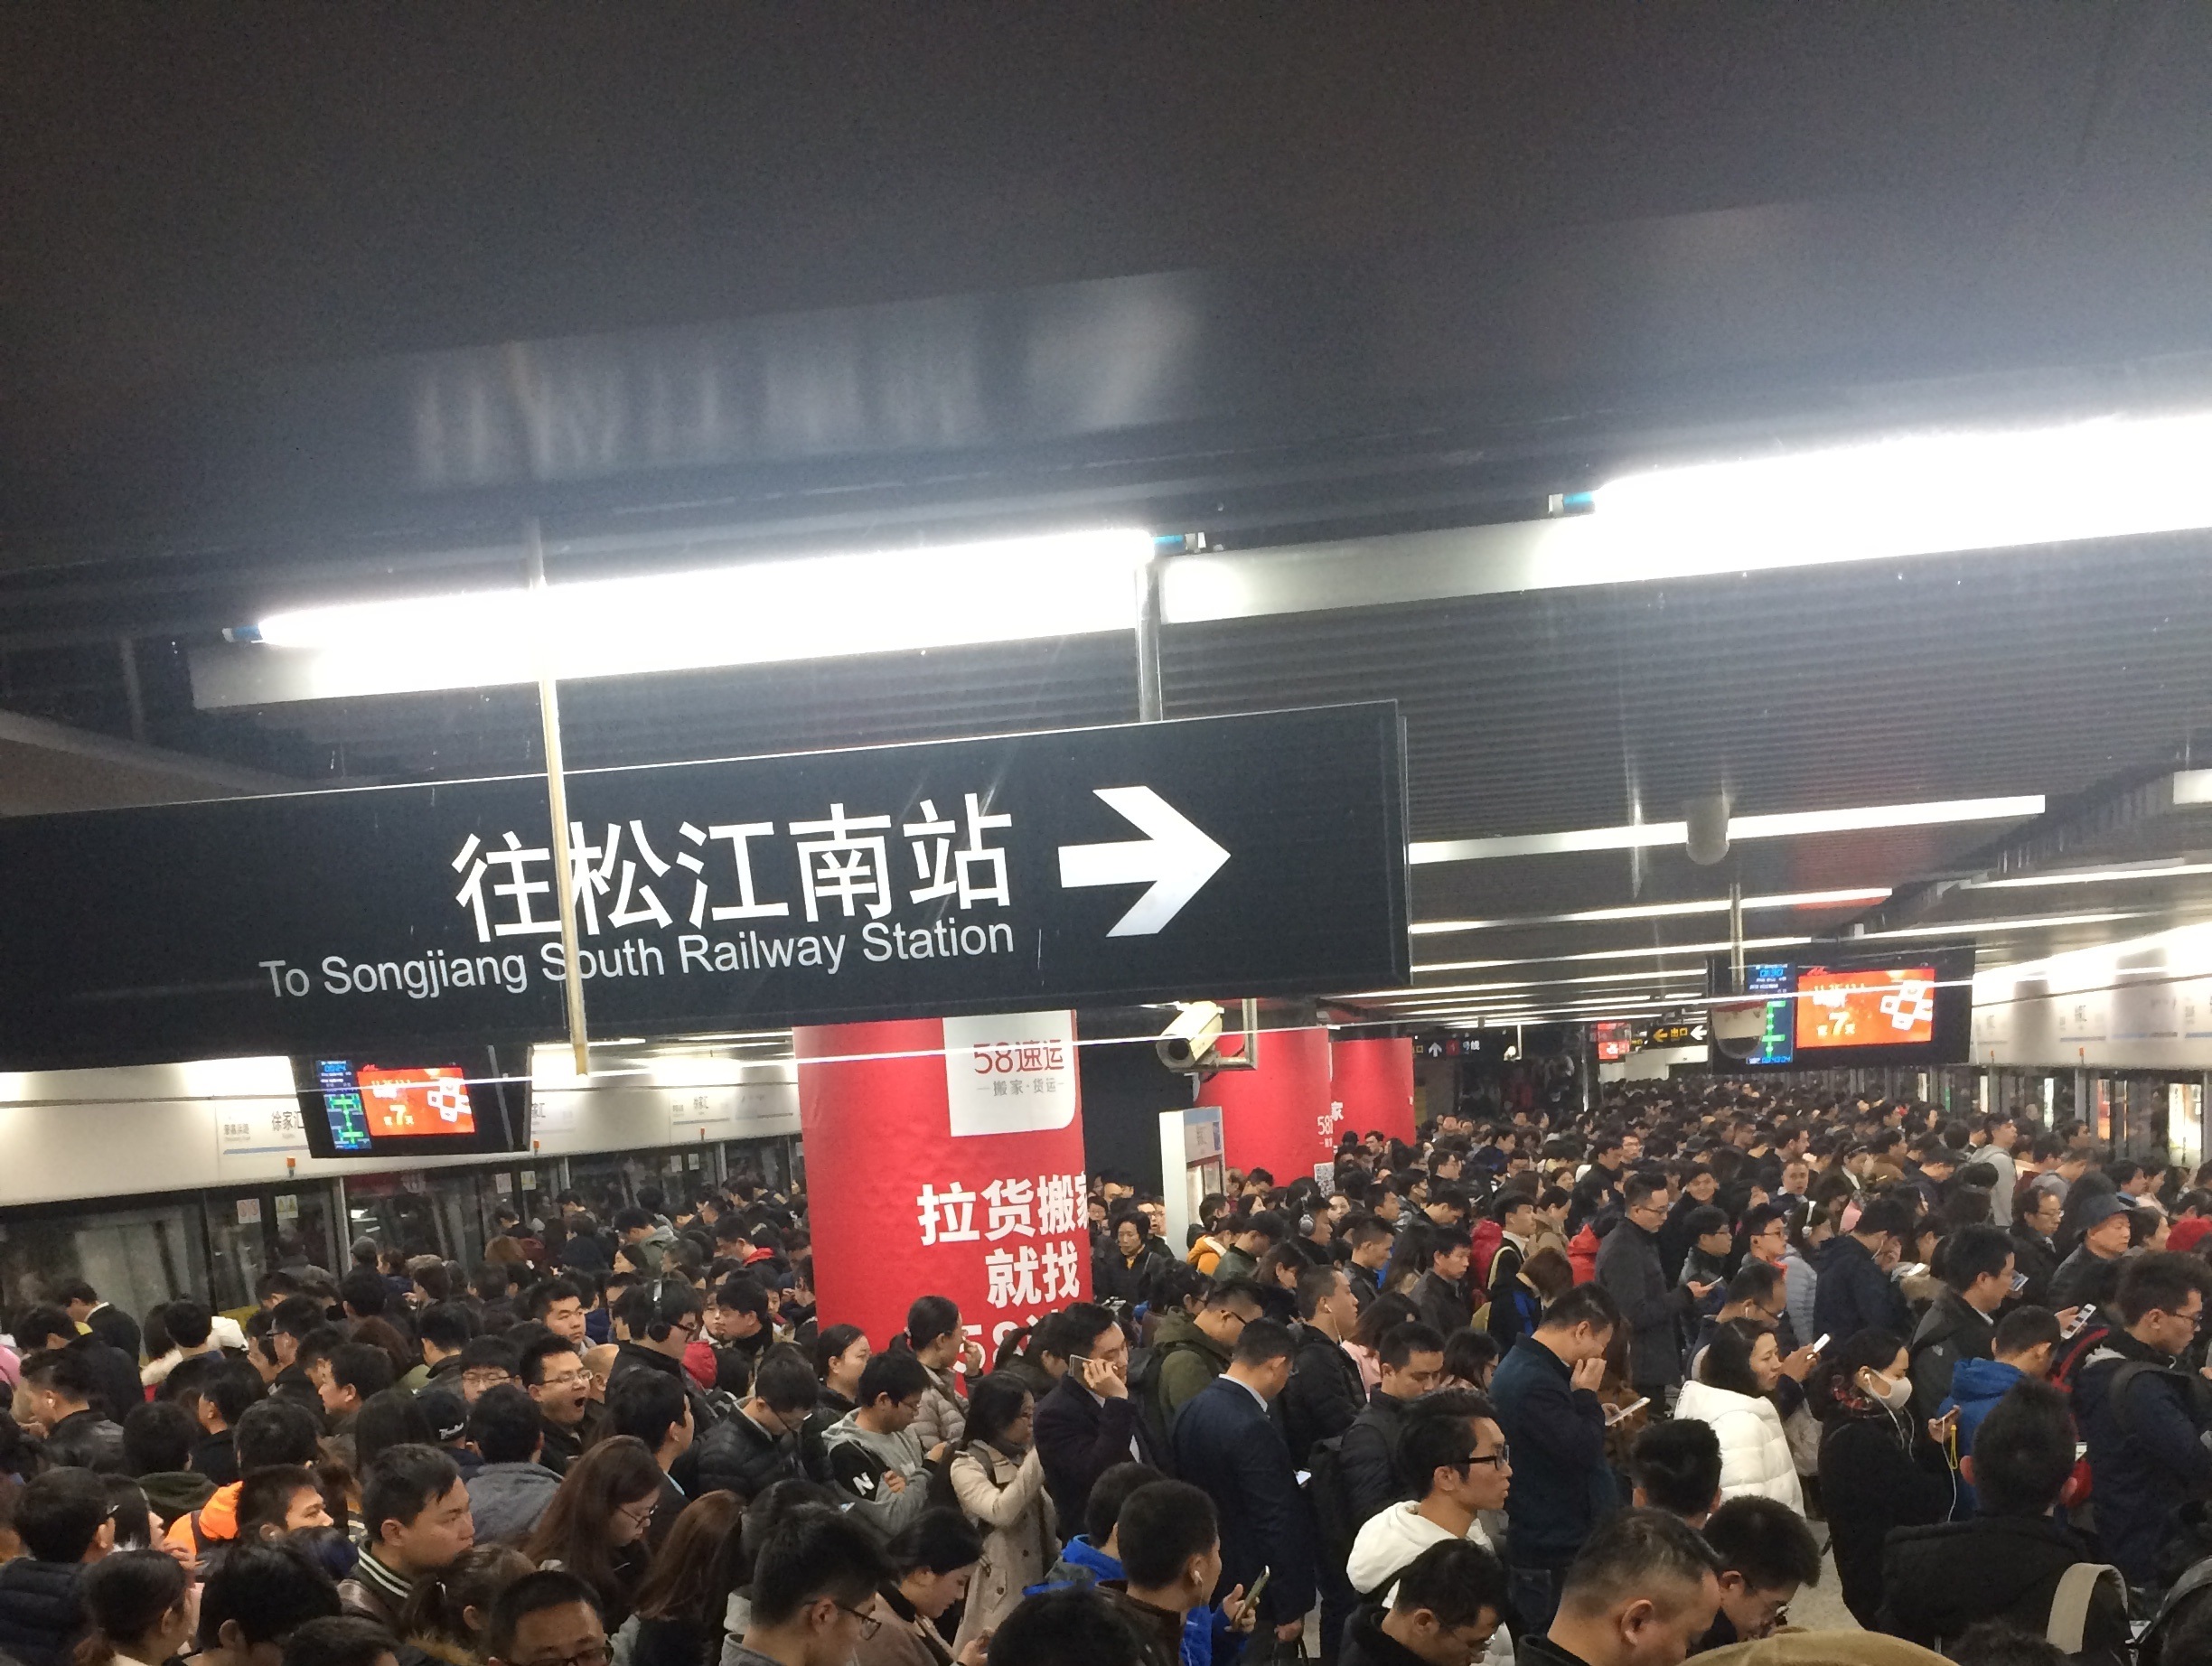 分析上海轨道交通9号线故障的影响:客流压力大的区段故障率更高